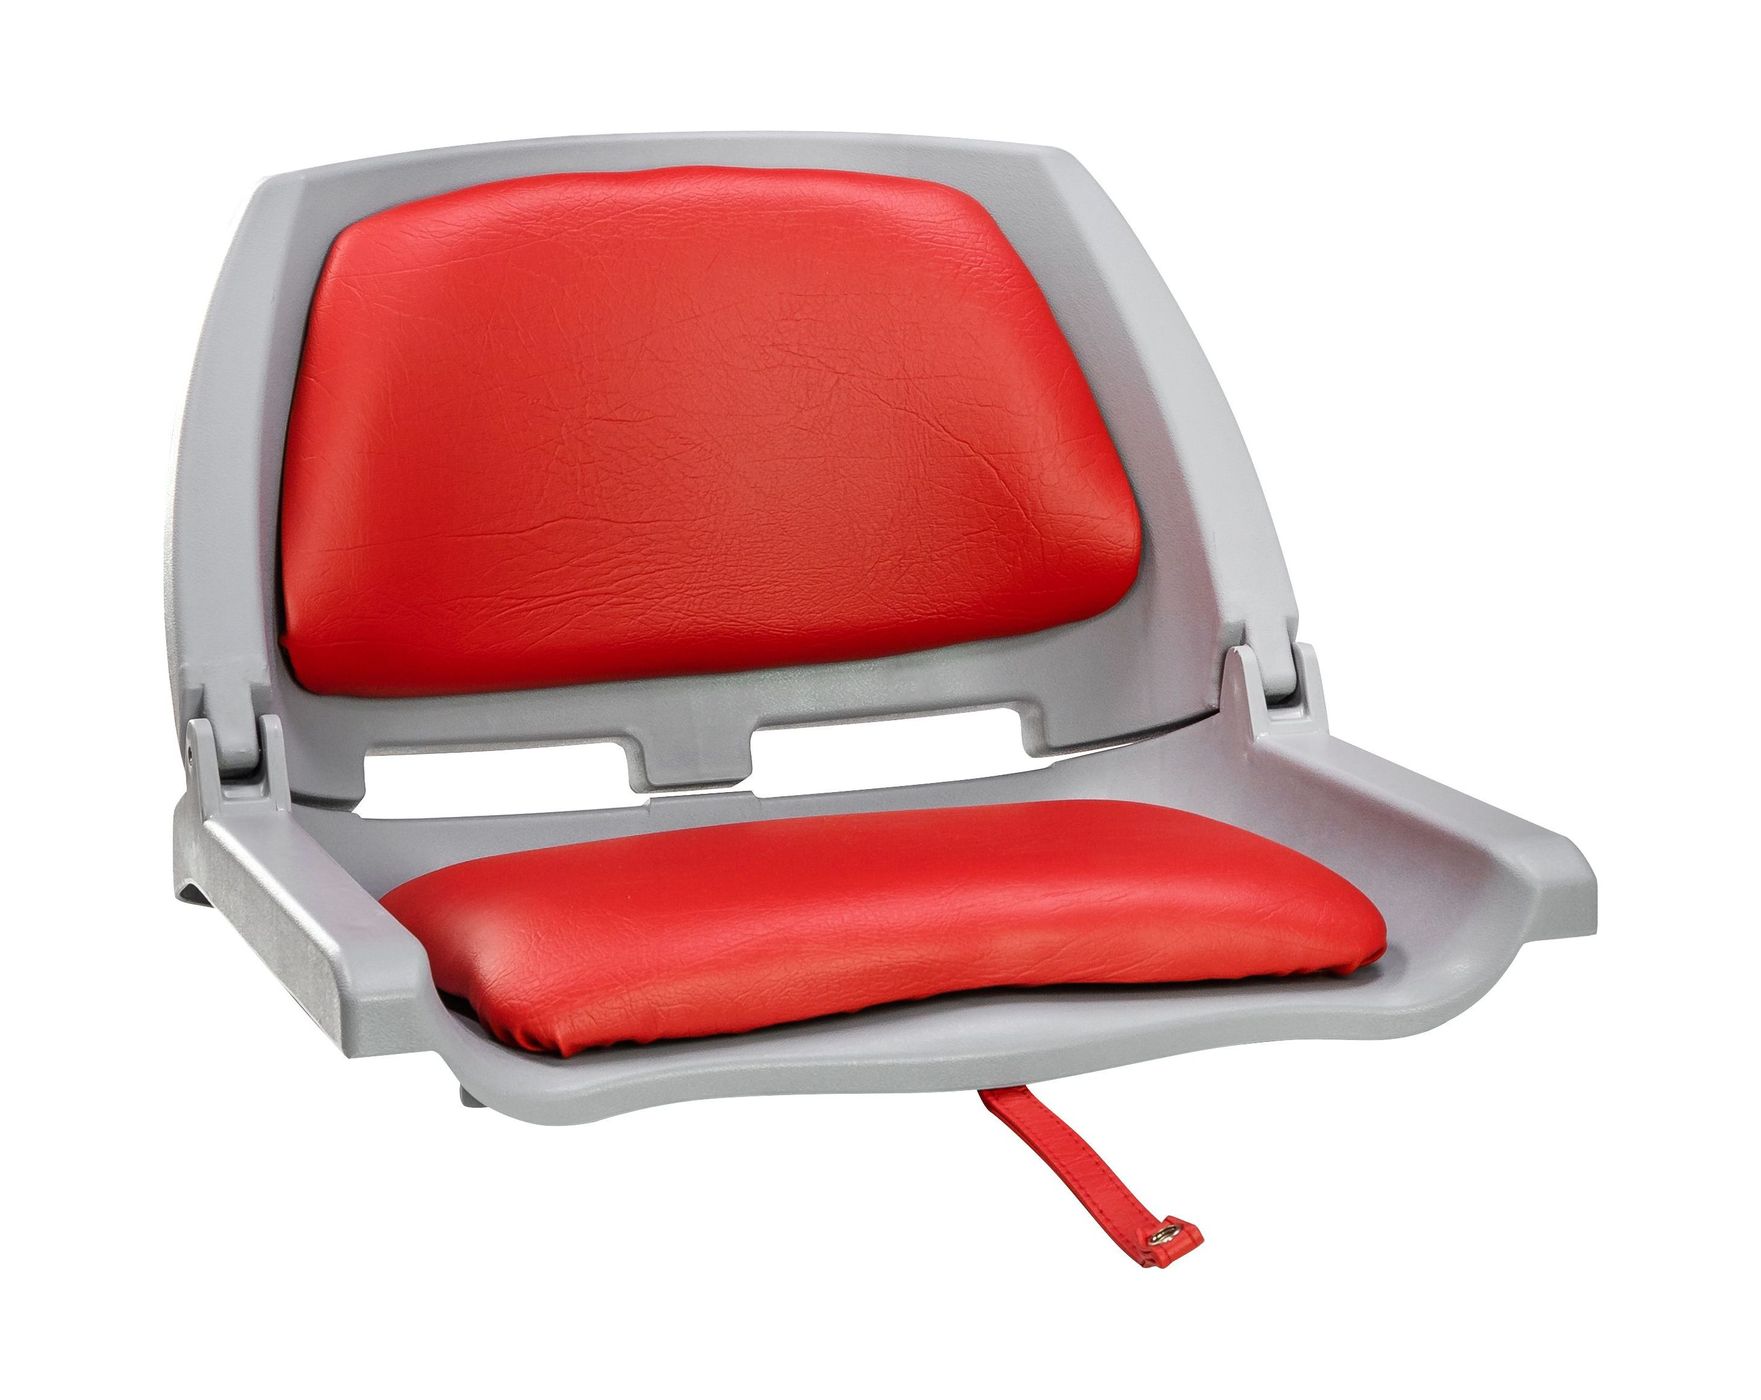 Кресло складное мягкое TRAVELER, цвет серый/красный 1061114C кресло мягкое складное classic обивка винил серый 75102gc mr